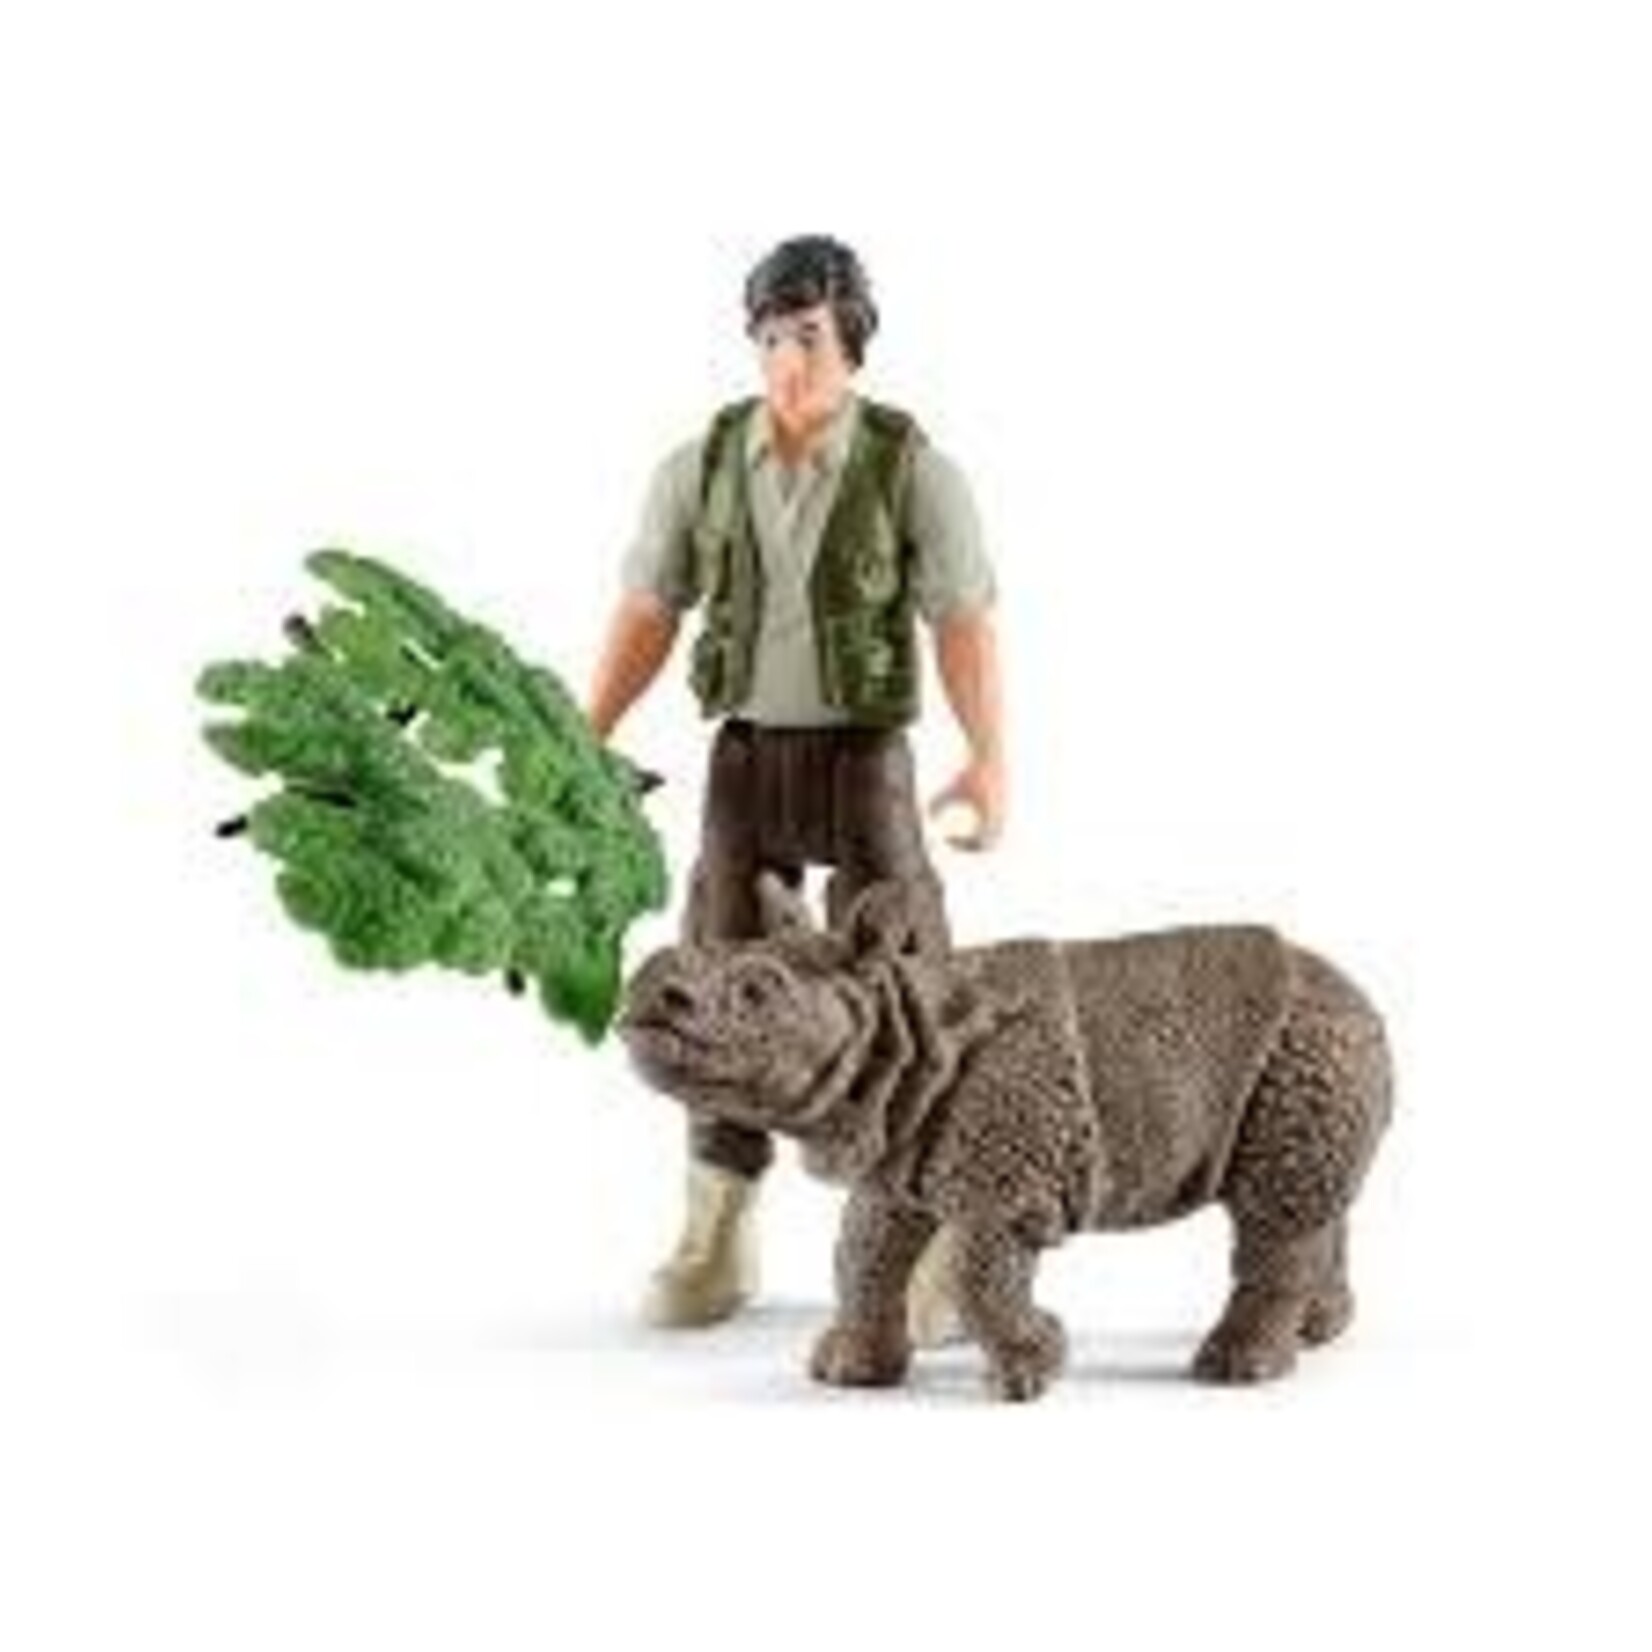 Schleich Ranger and Indian rhinoceros starter set